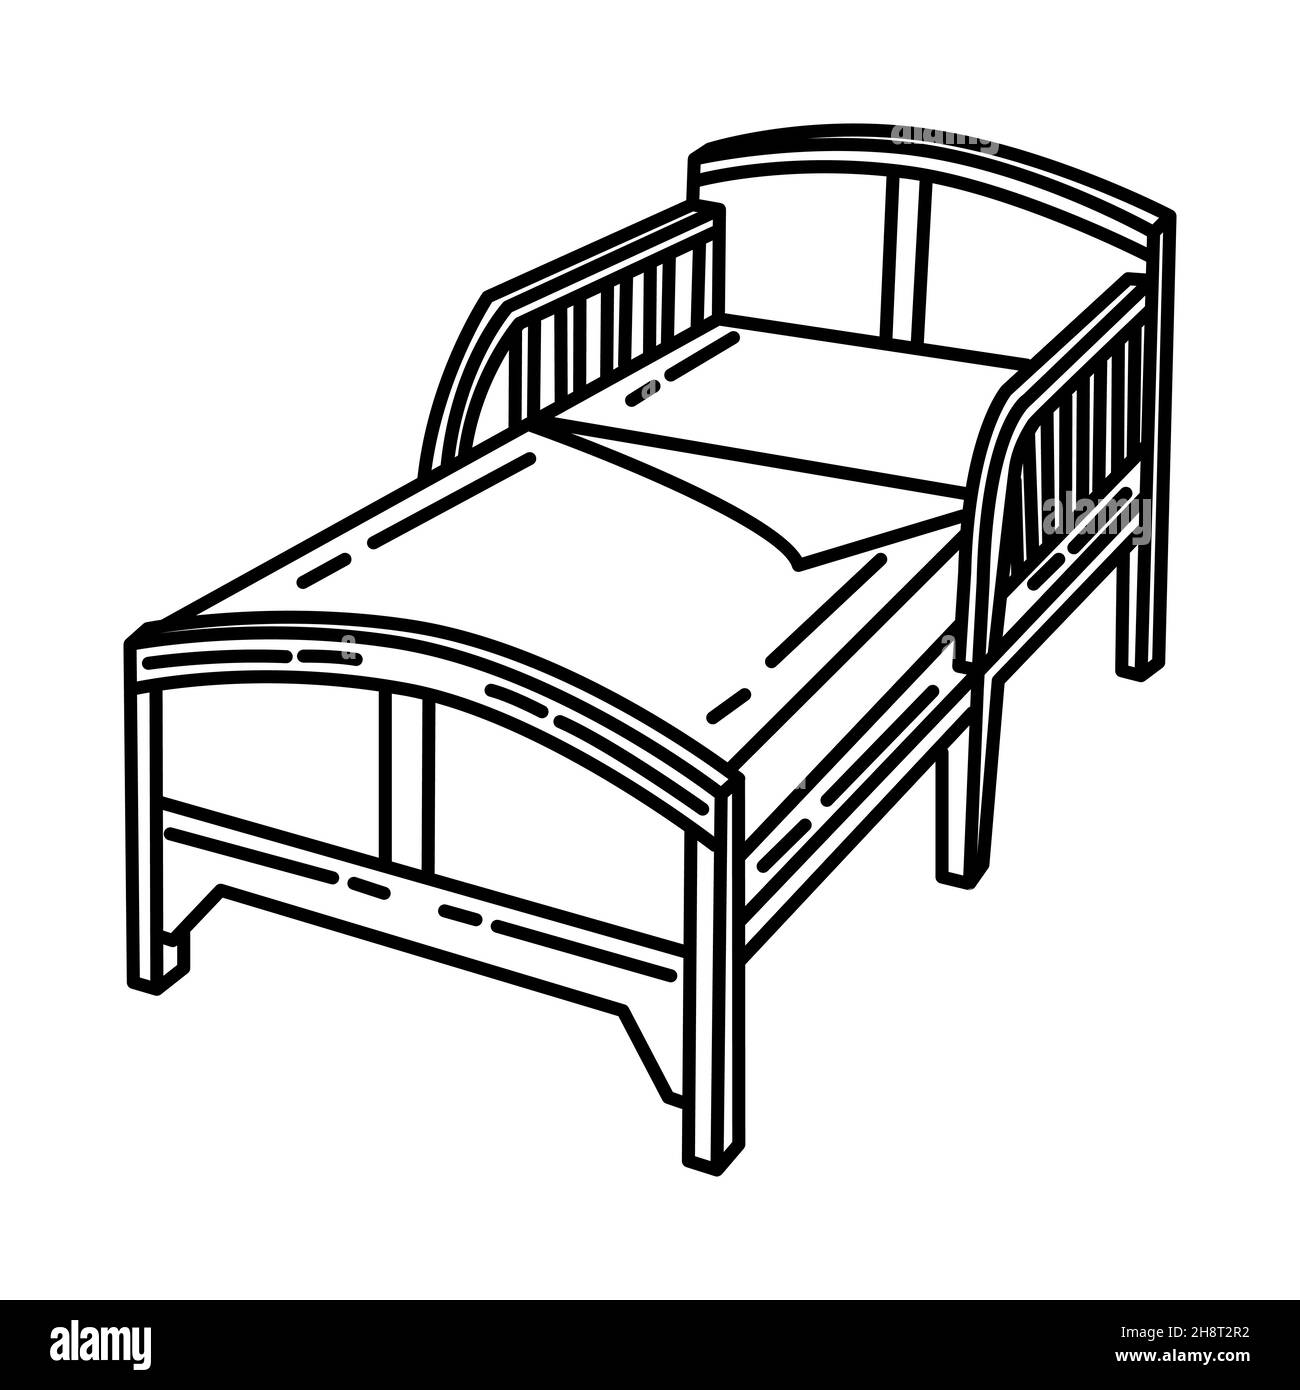 Pièce de lit d'enfant de mobilier et d'équipement de maison dessin main  icône ensemble Vector Image Vectorielle Stock - Alamy